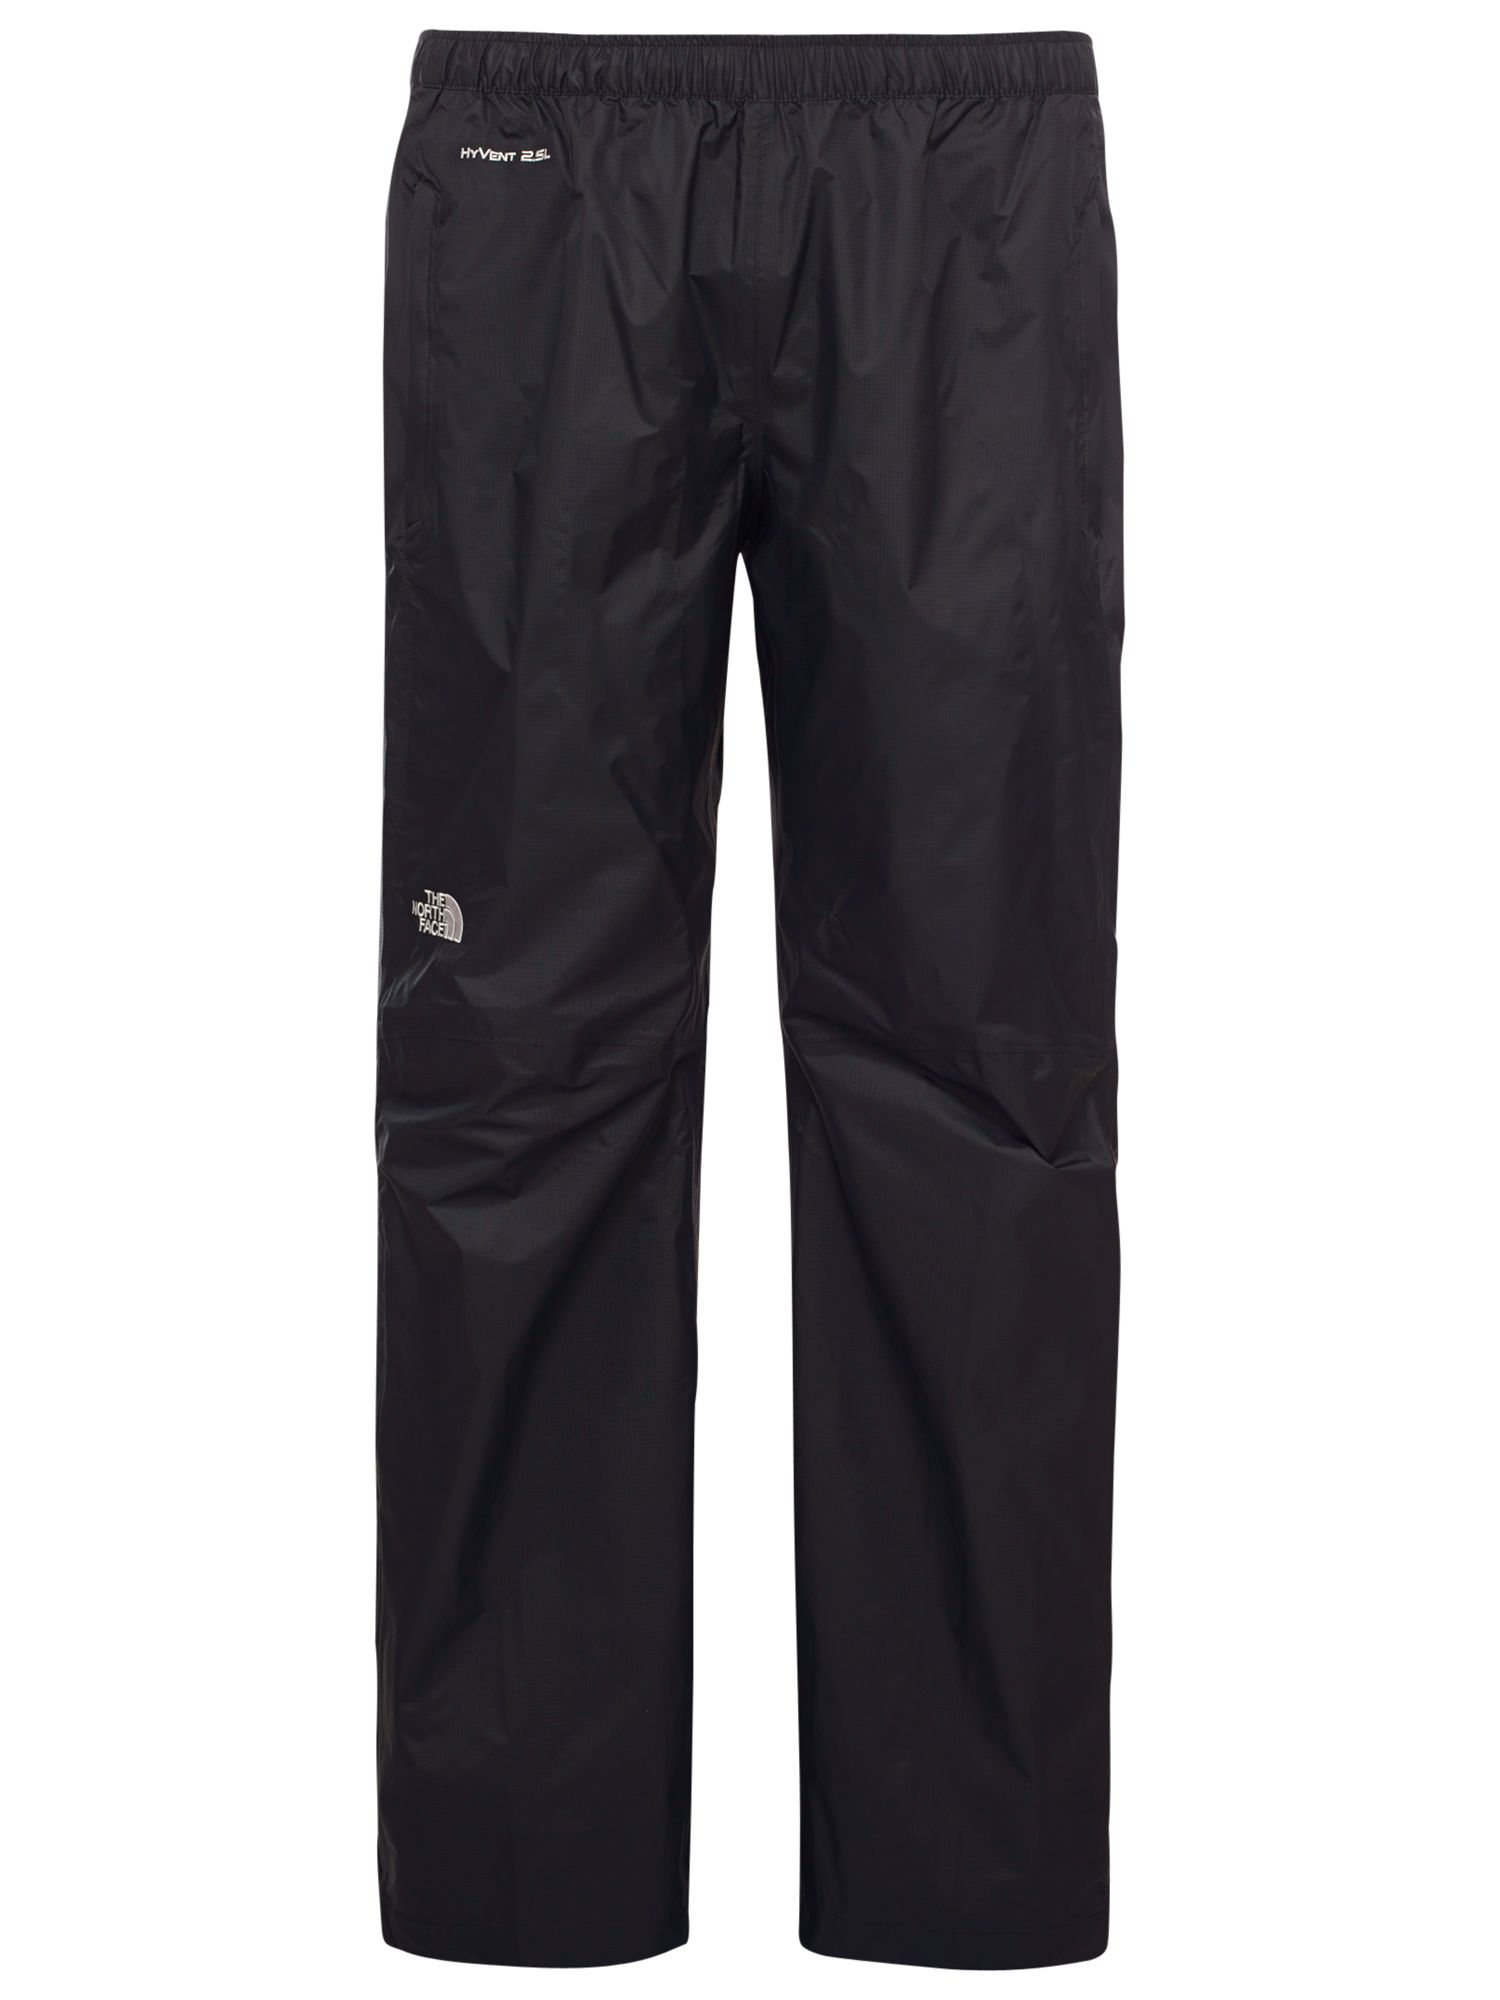 northface waterproof pants